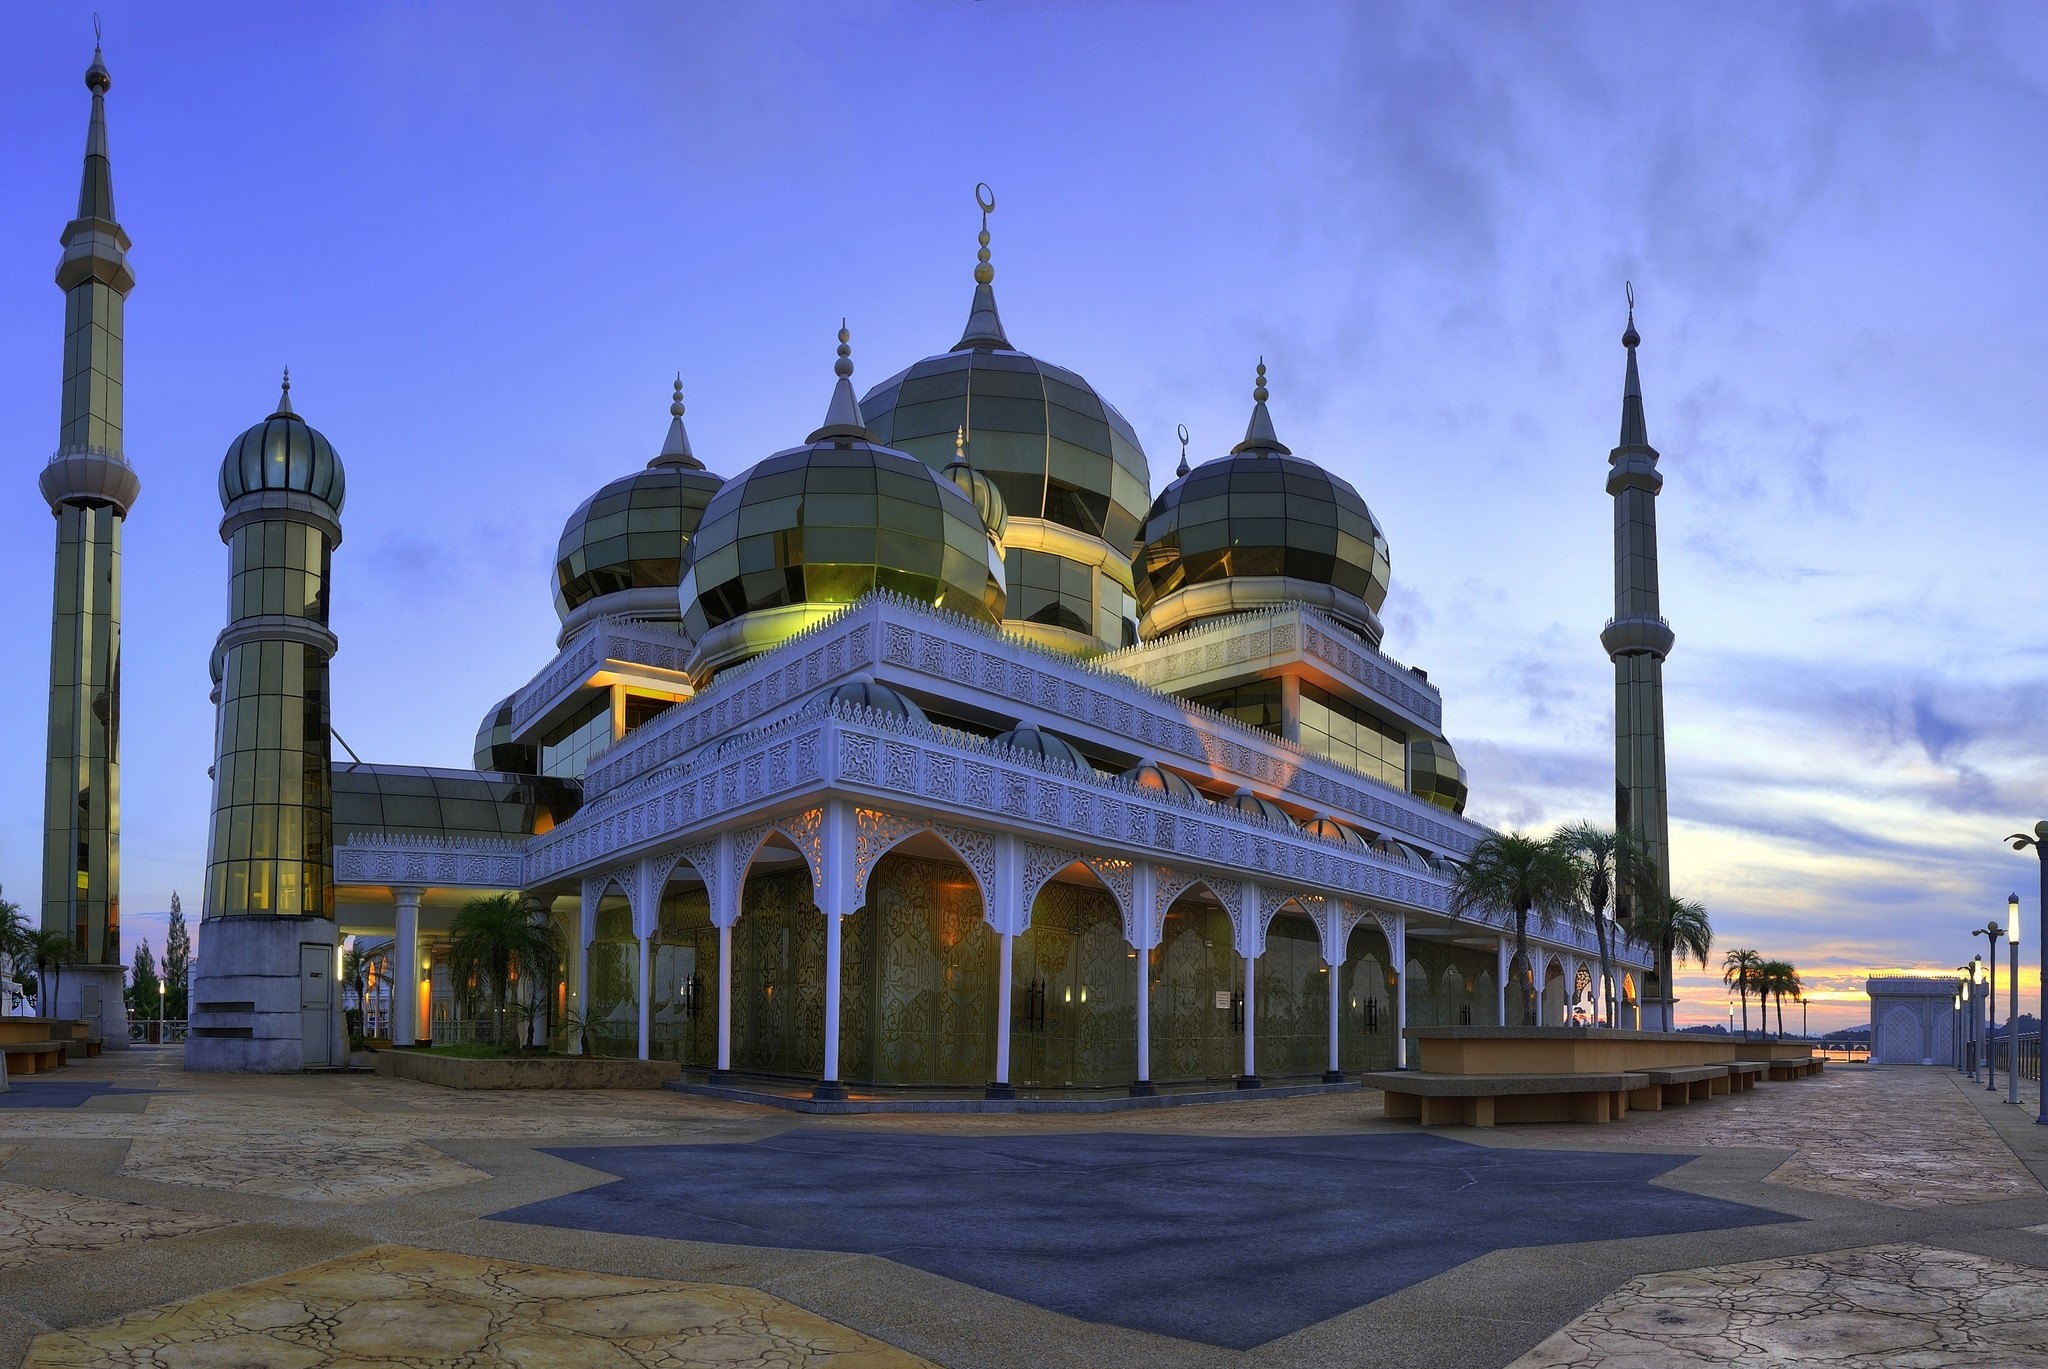 Мечеть фото в хорошем качестве